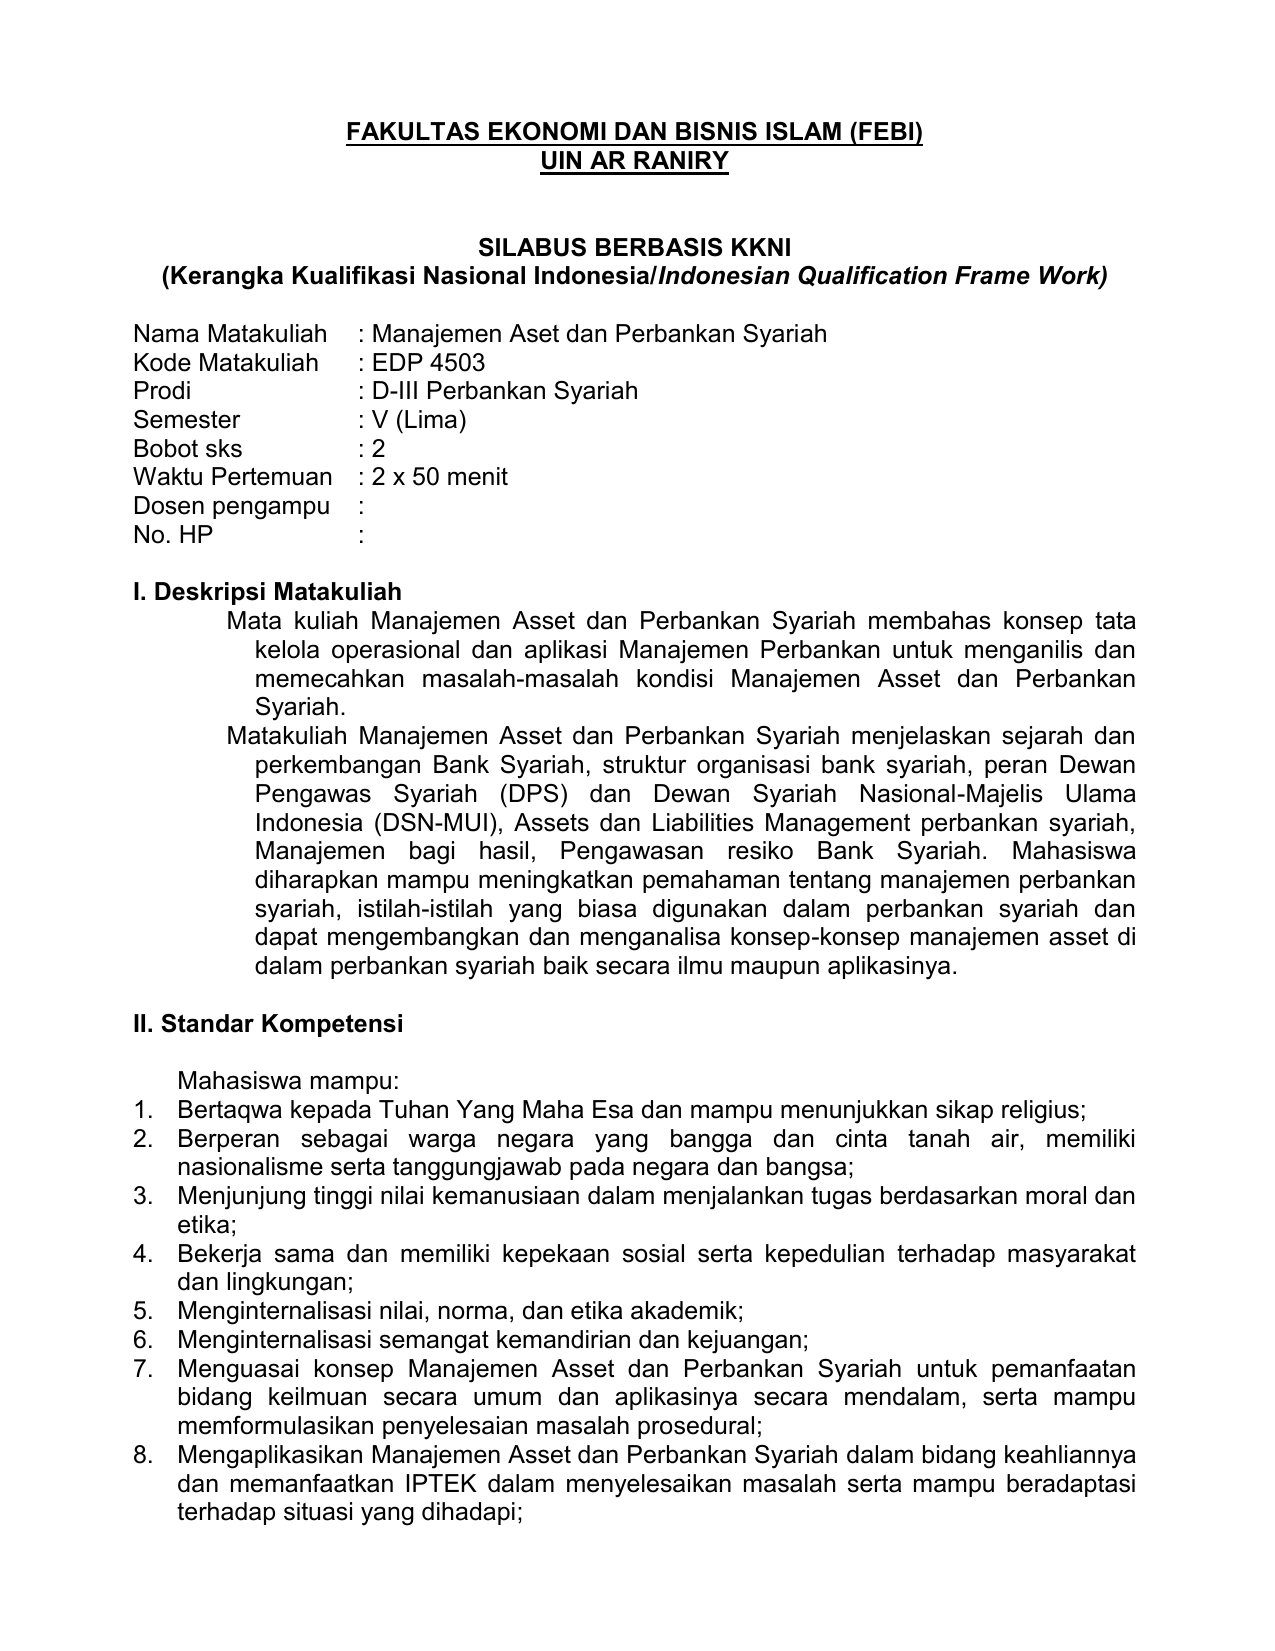 FAKULTAS EKONOMI DAN BISNIS ISLAM FEBI UIN AR RANIRY SILABUS BERBASIS KKNI Kerangka Kualifikasi Nasional Indonesia Indonesian Qualification Frame Work